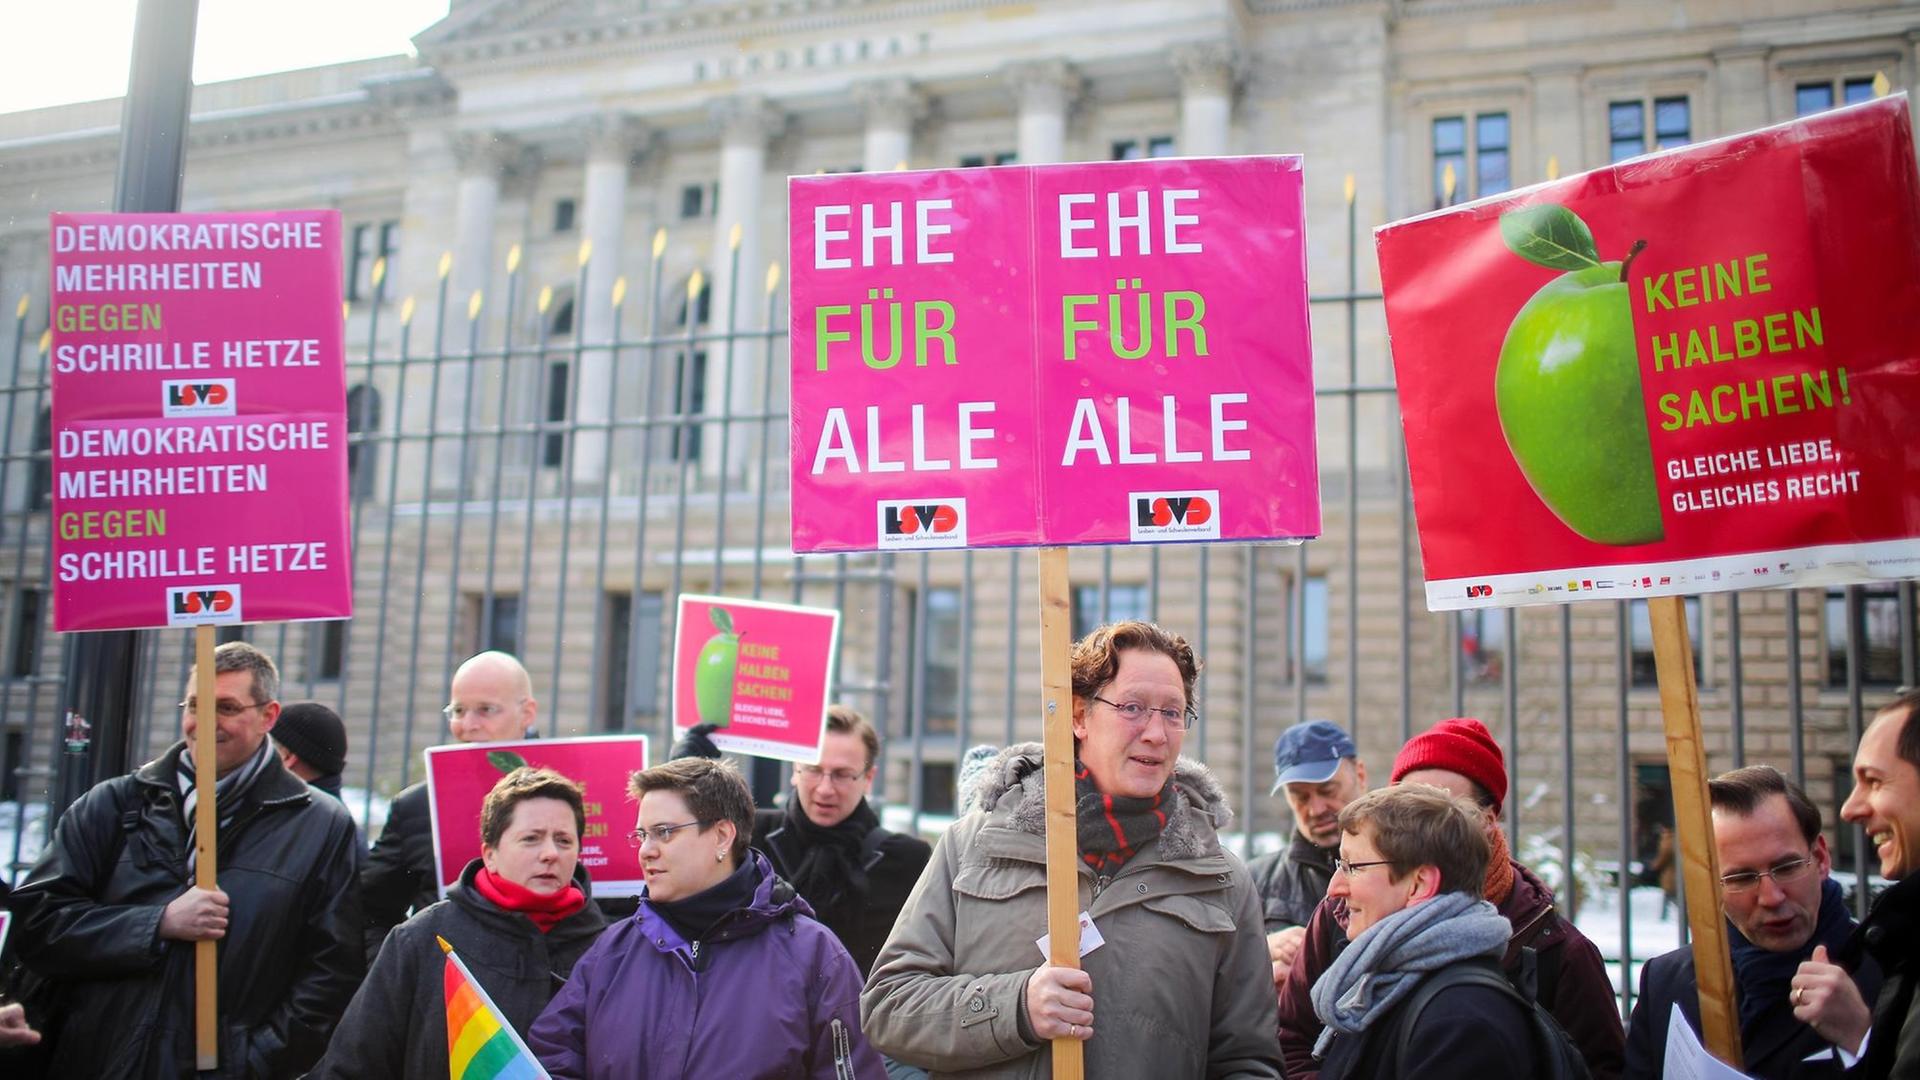 Demonstranten fordern am 22.03.2013 vor dem Bundesrat in Berlin die rechtliche Gleichstellung der Ehe für alle.